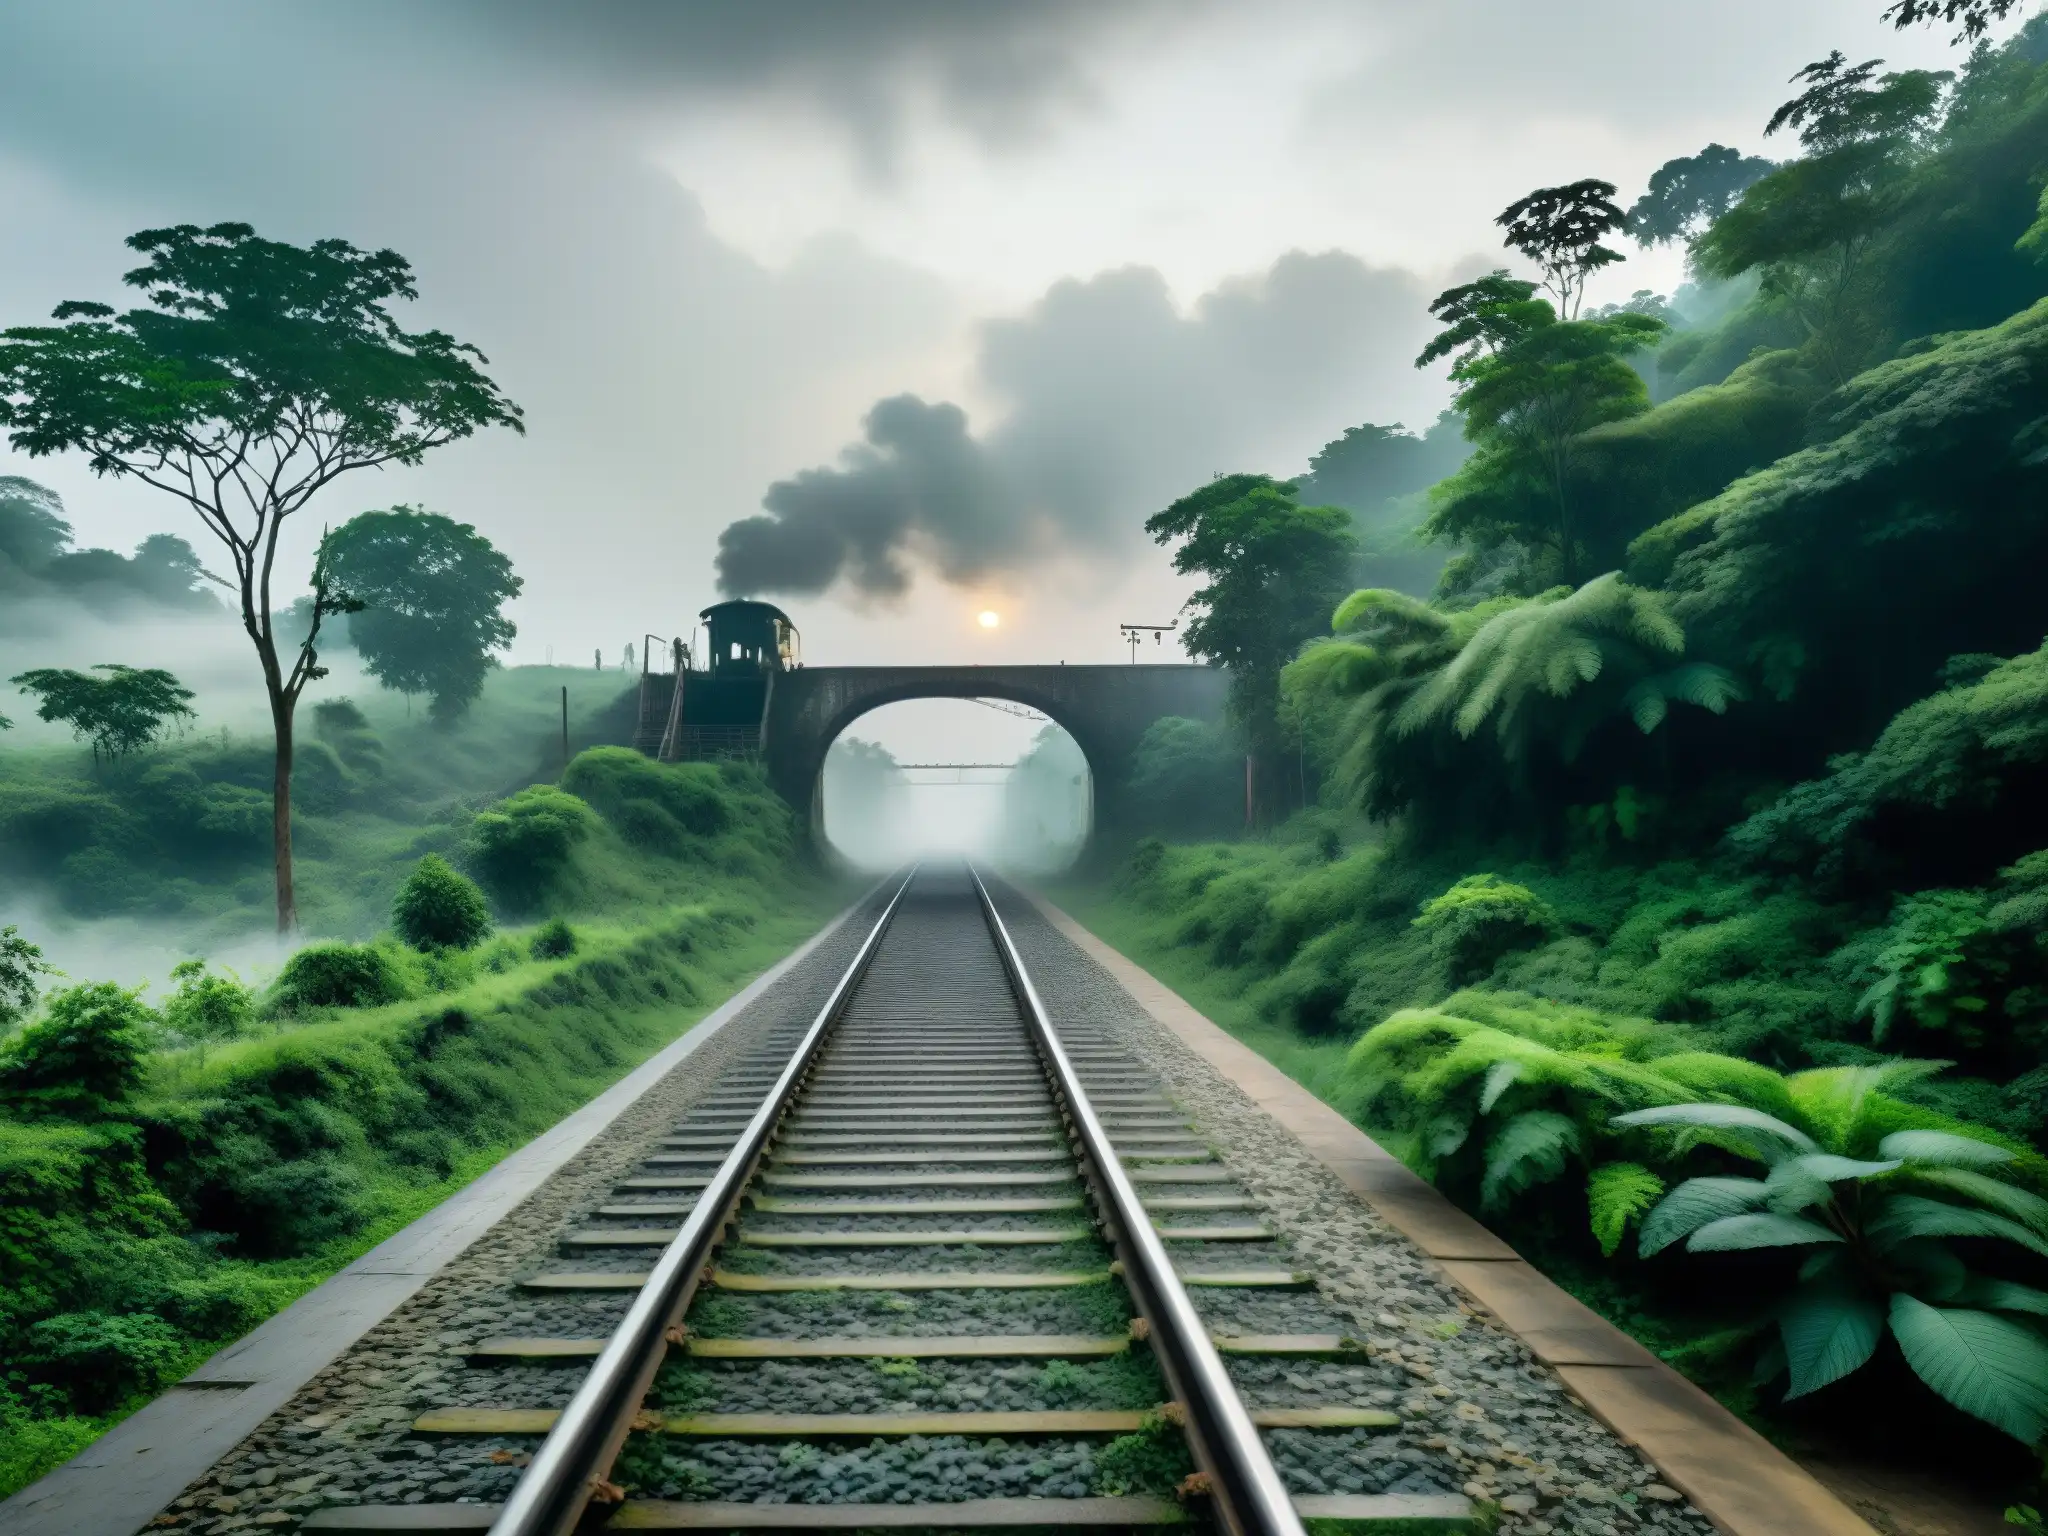 Vieja vía ferroviaria serpenteando entre la espesa niebla en Bangladesh, evocando el fantasma del tren en Bangladesh